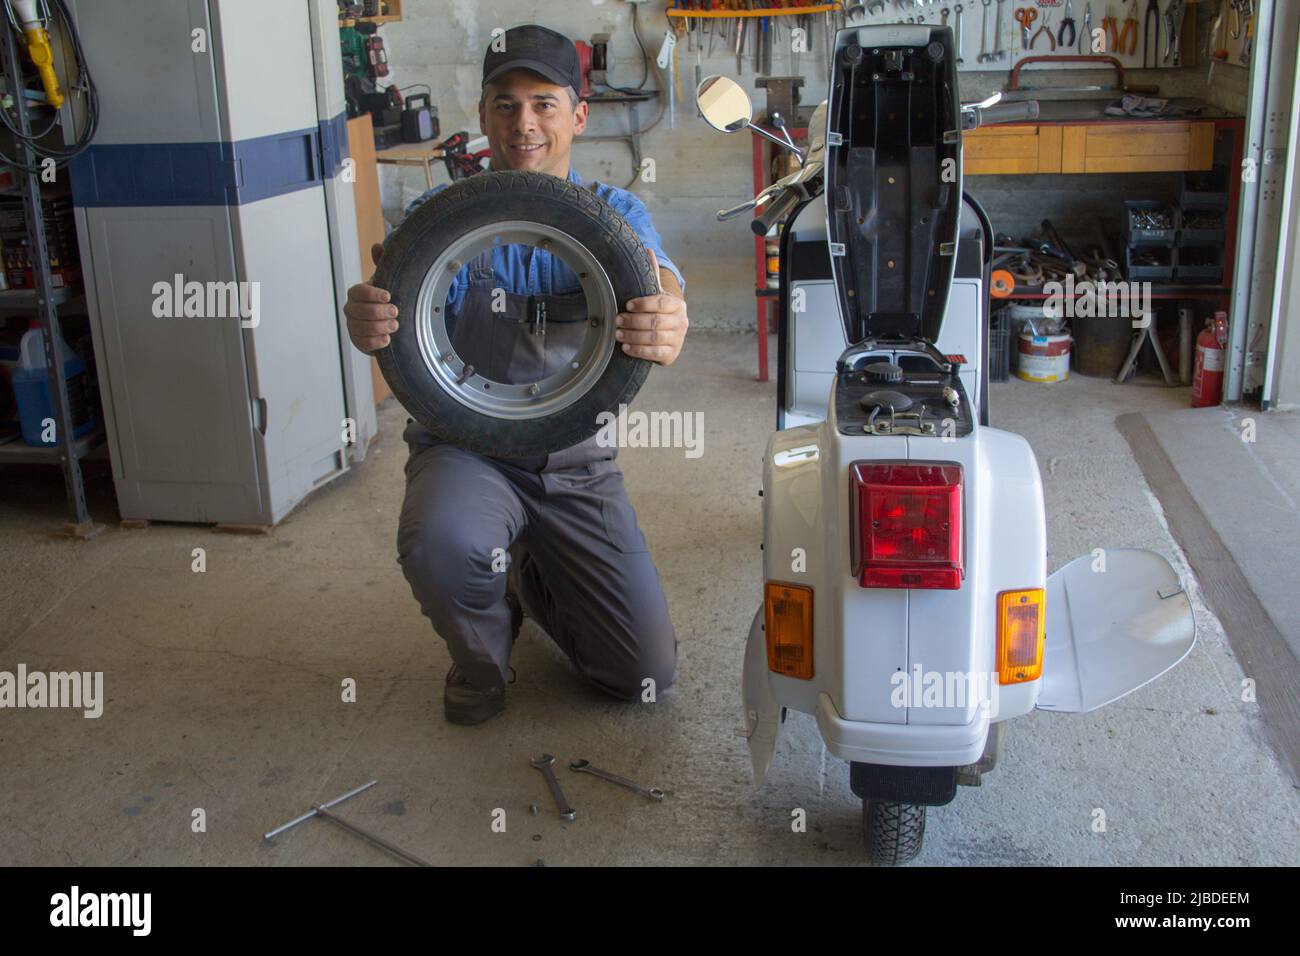 Imagen de un mecánico sonriente en su taller sosteniendo una rueda de la motocicleta que está reparando. Foto de stock